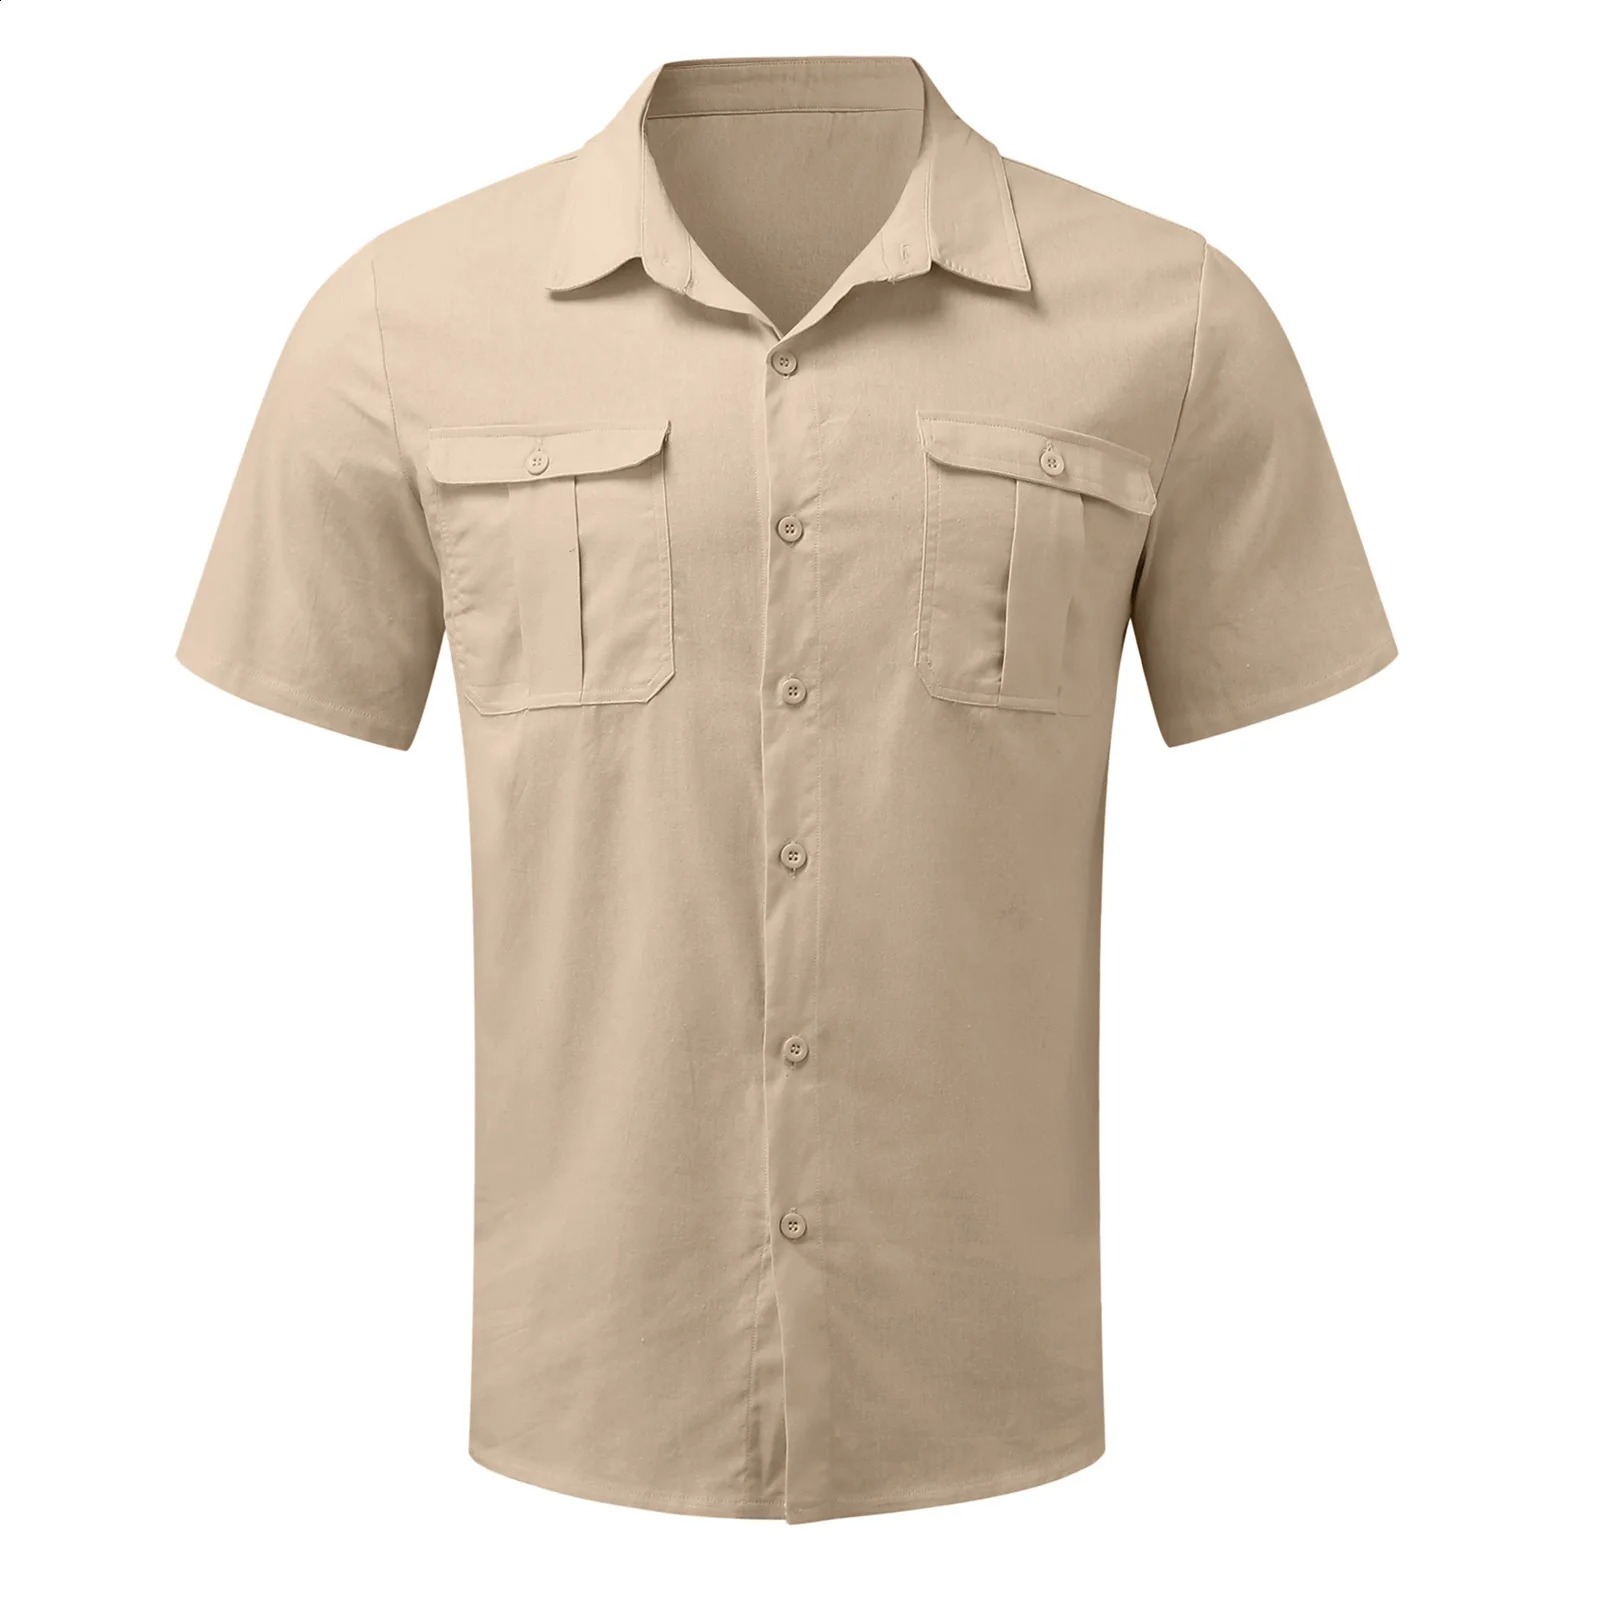 Pamuk Keten Erkekler Kısa Çevirilmiş Gömlek Yaz Düz Renk Stand up Yellow Casual Beach Style Plus Sizemale M5XL 240219